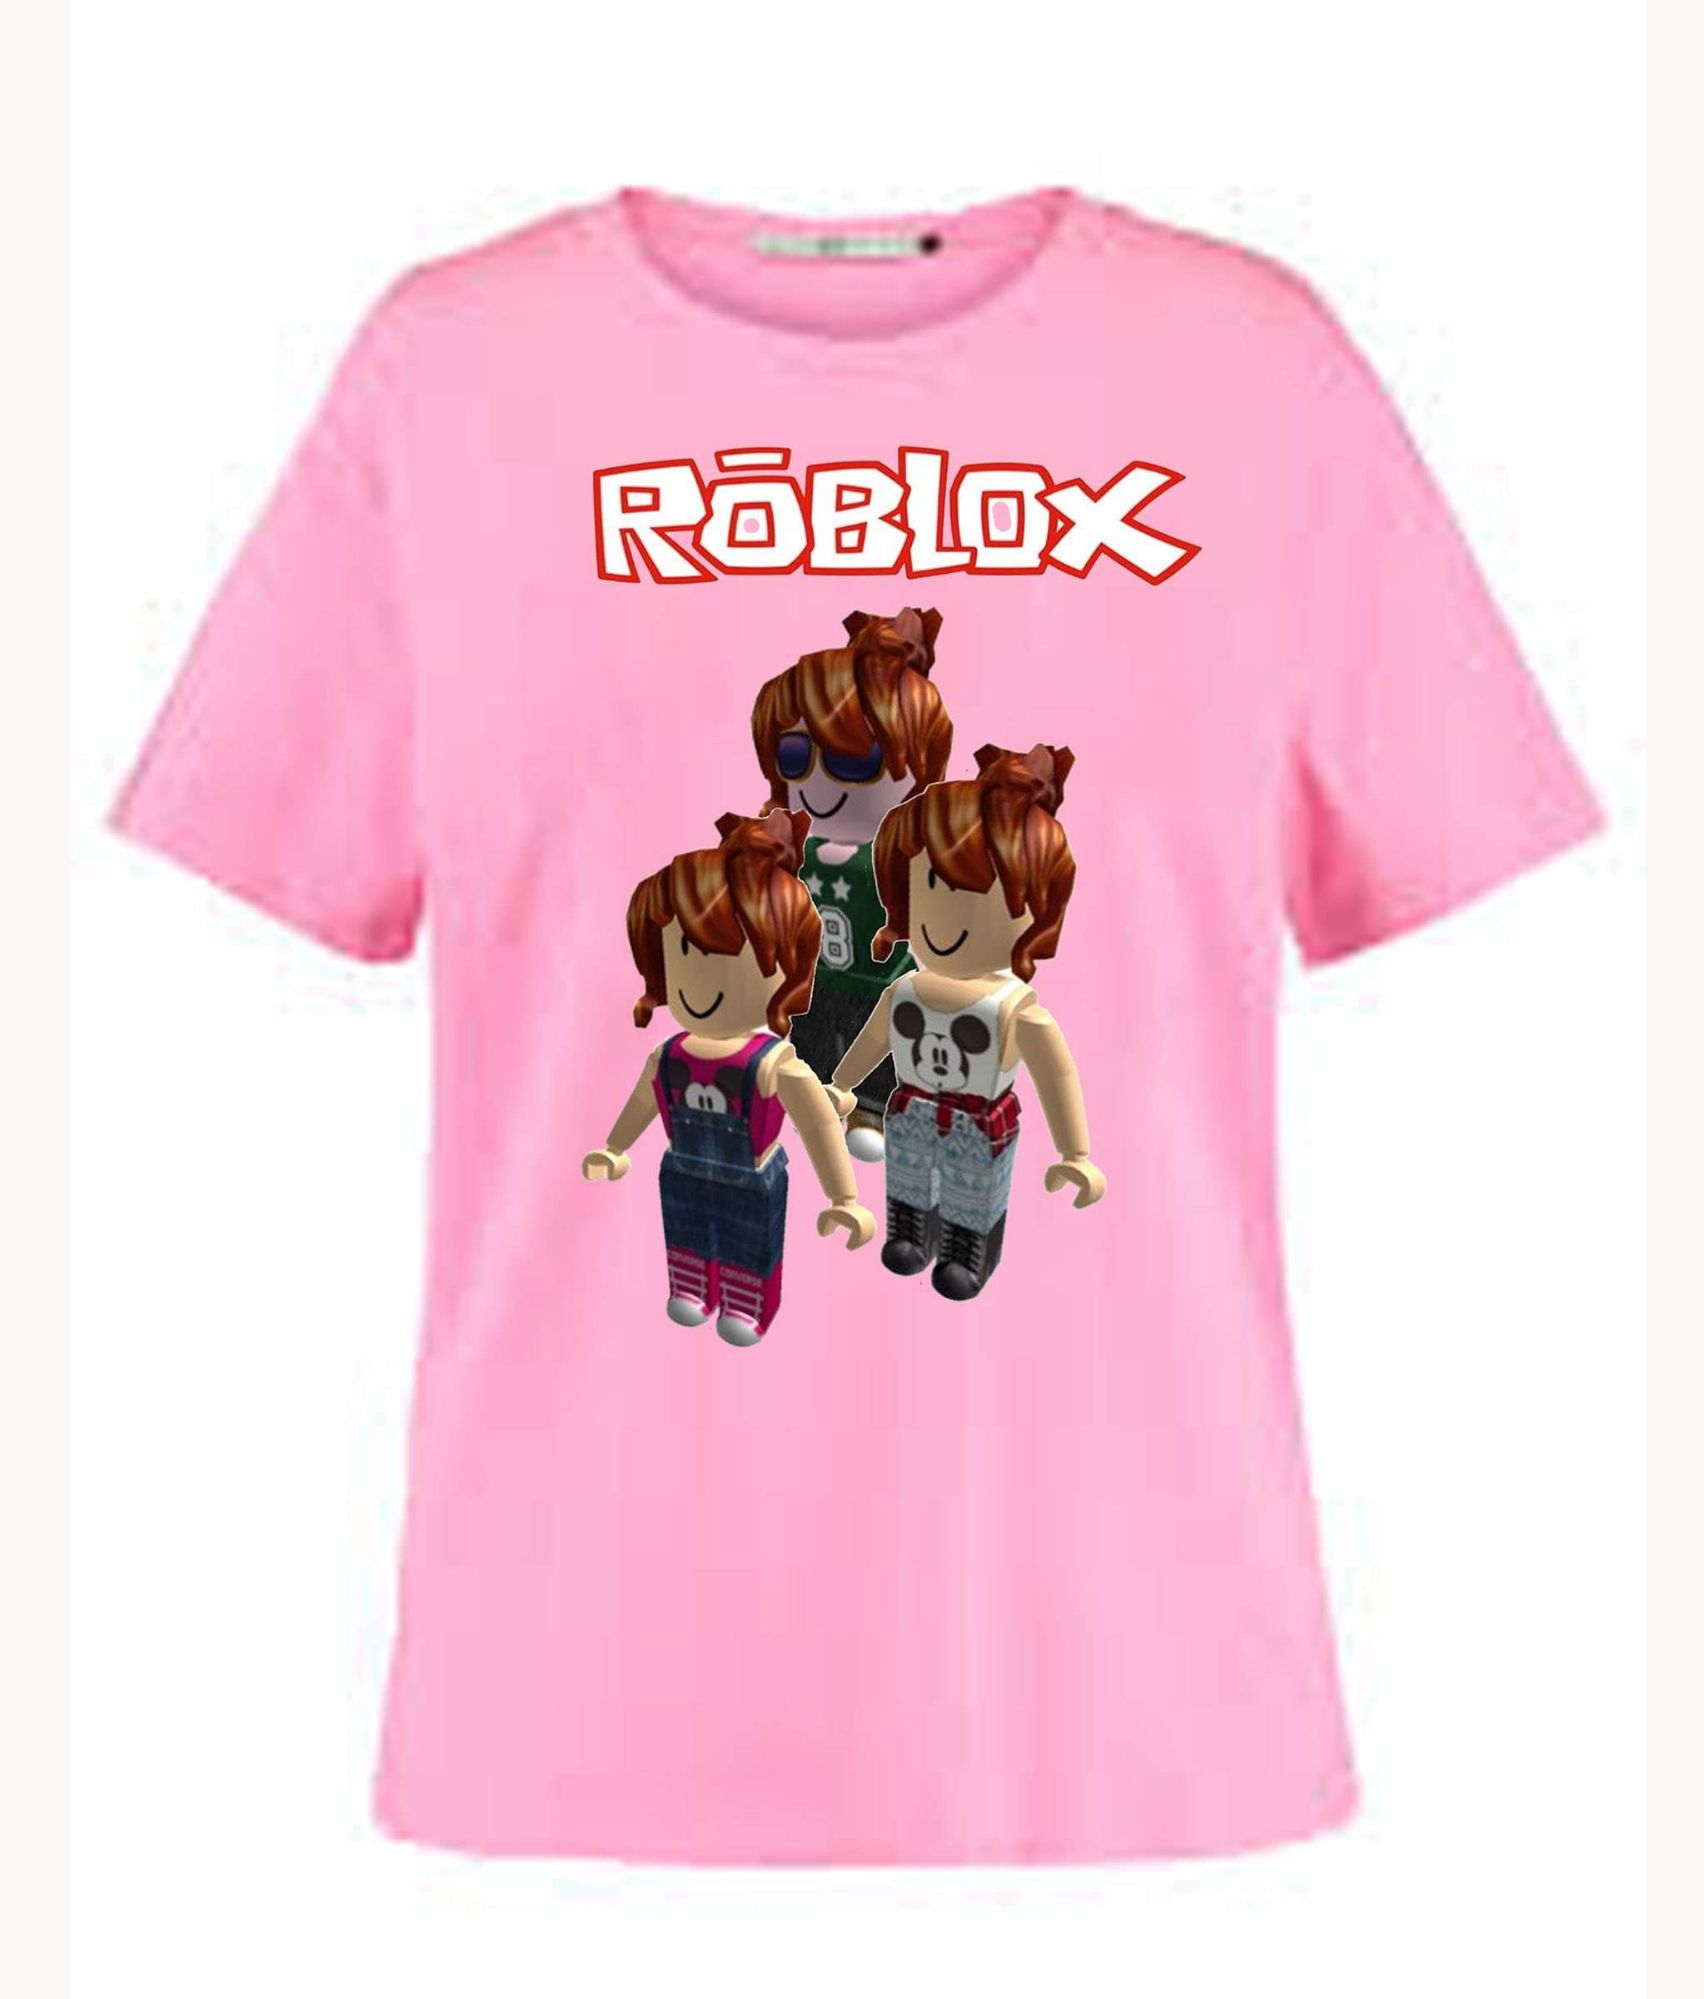 cute t-shirt - Roblox